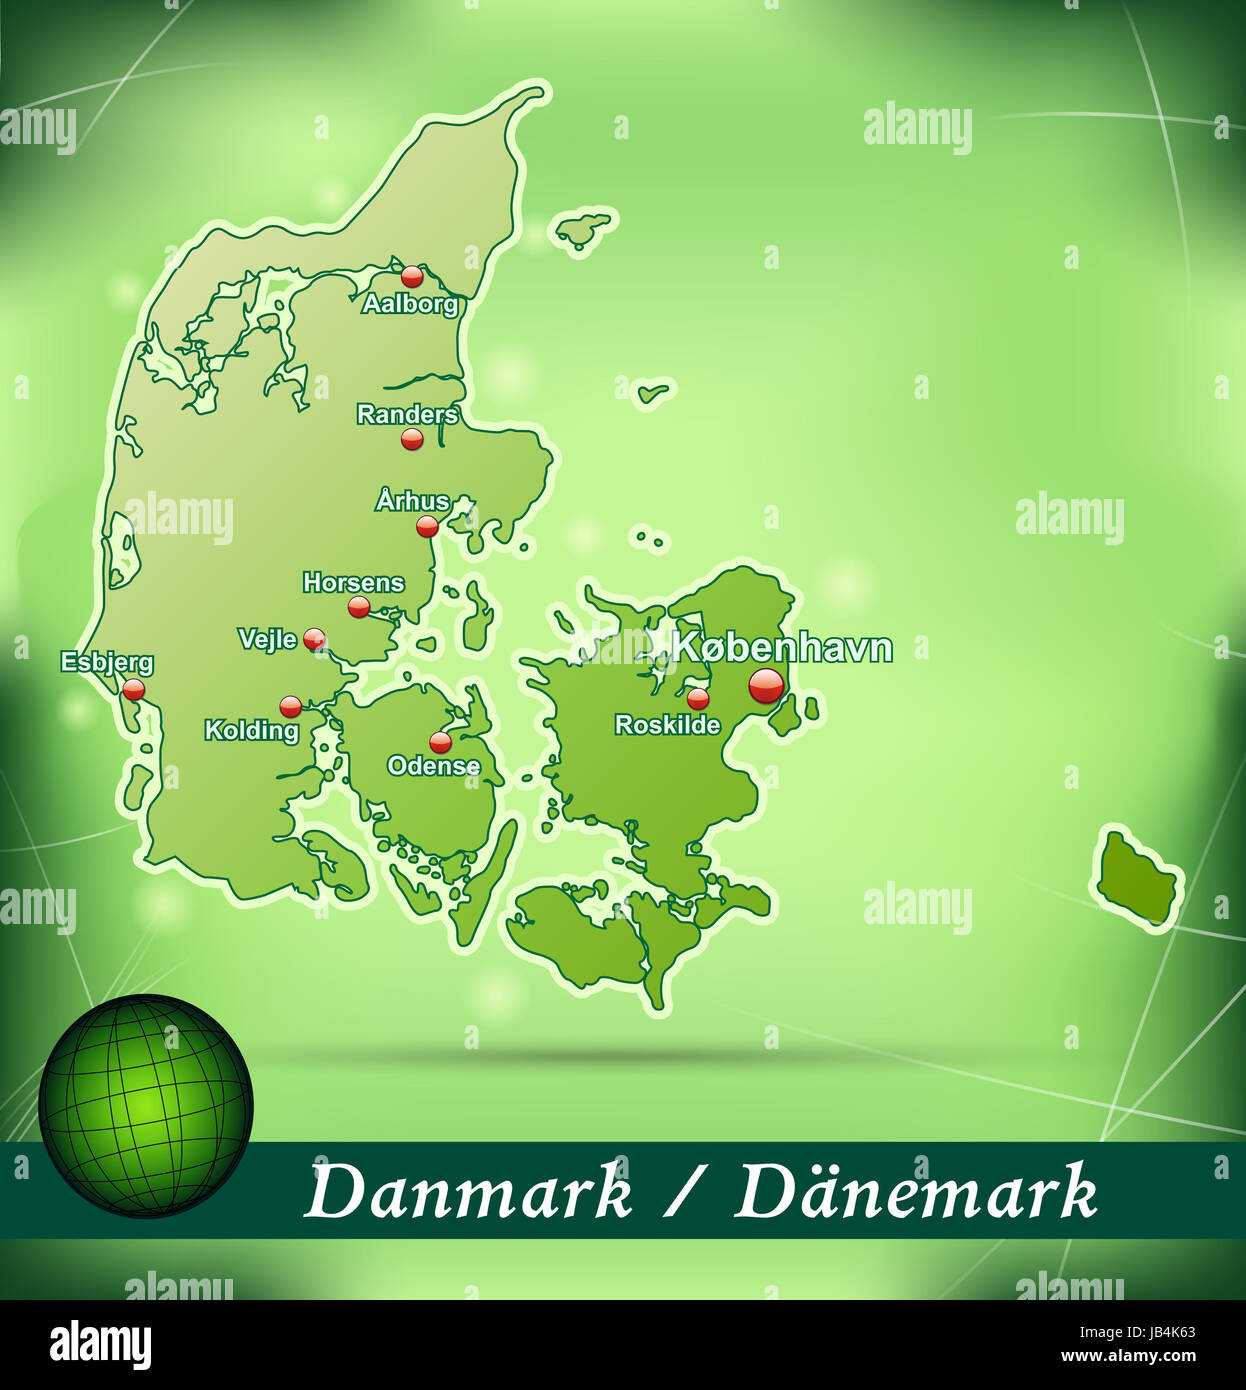 Dänemark in Europa als Inselkarte mit abstraktem Hintergrund in Grün. Durch die ansprechende Gestaltung fügt sich die Karte perfekt in Ihr Vorhaben ein. Foto Stock